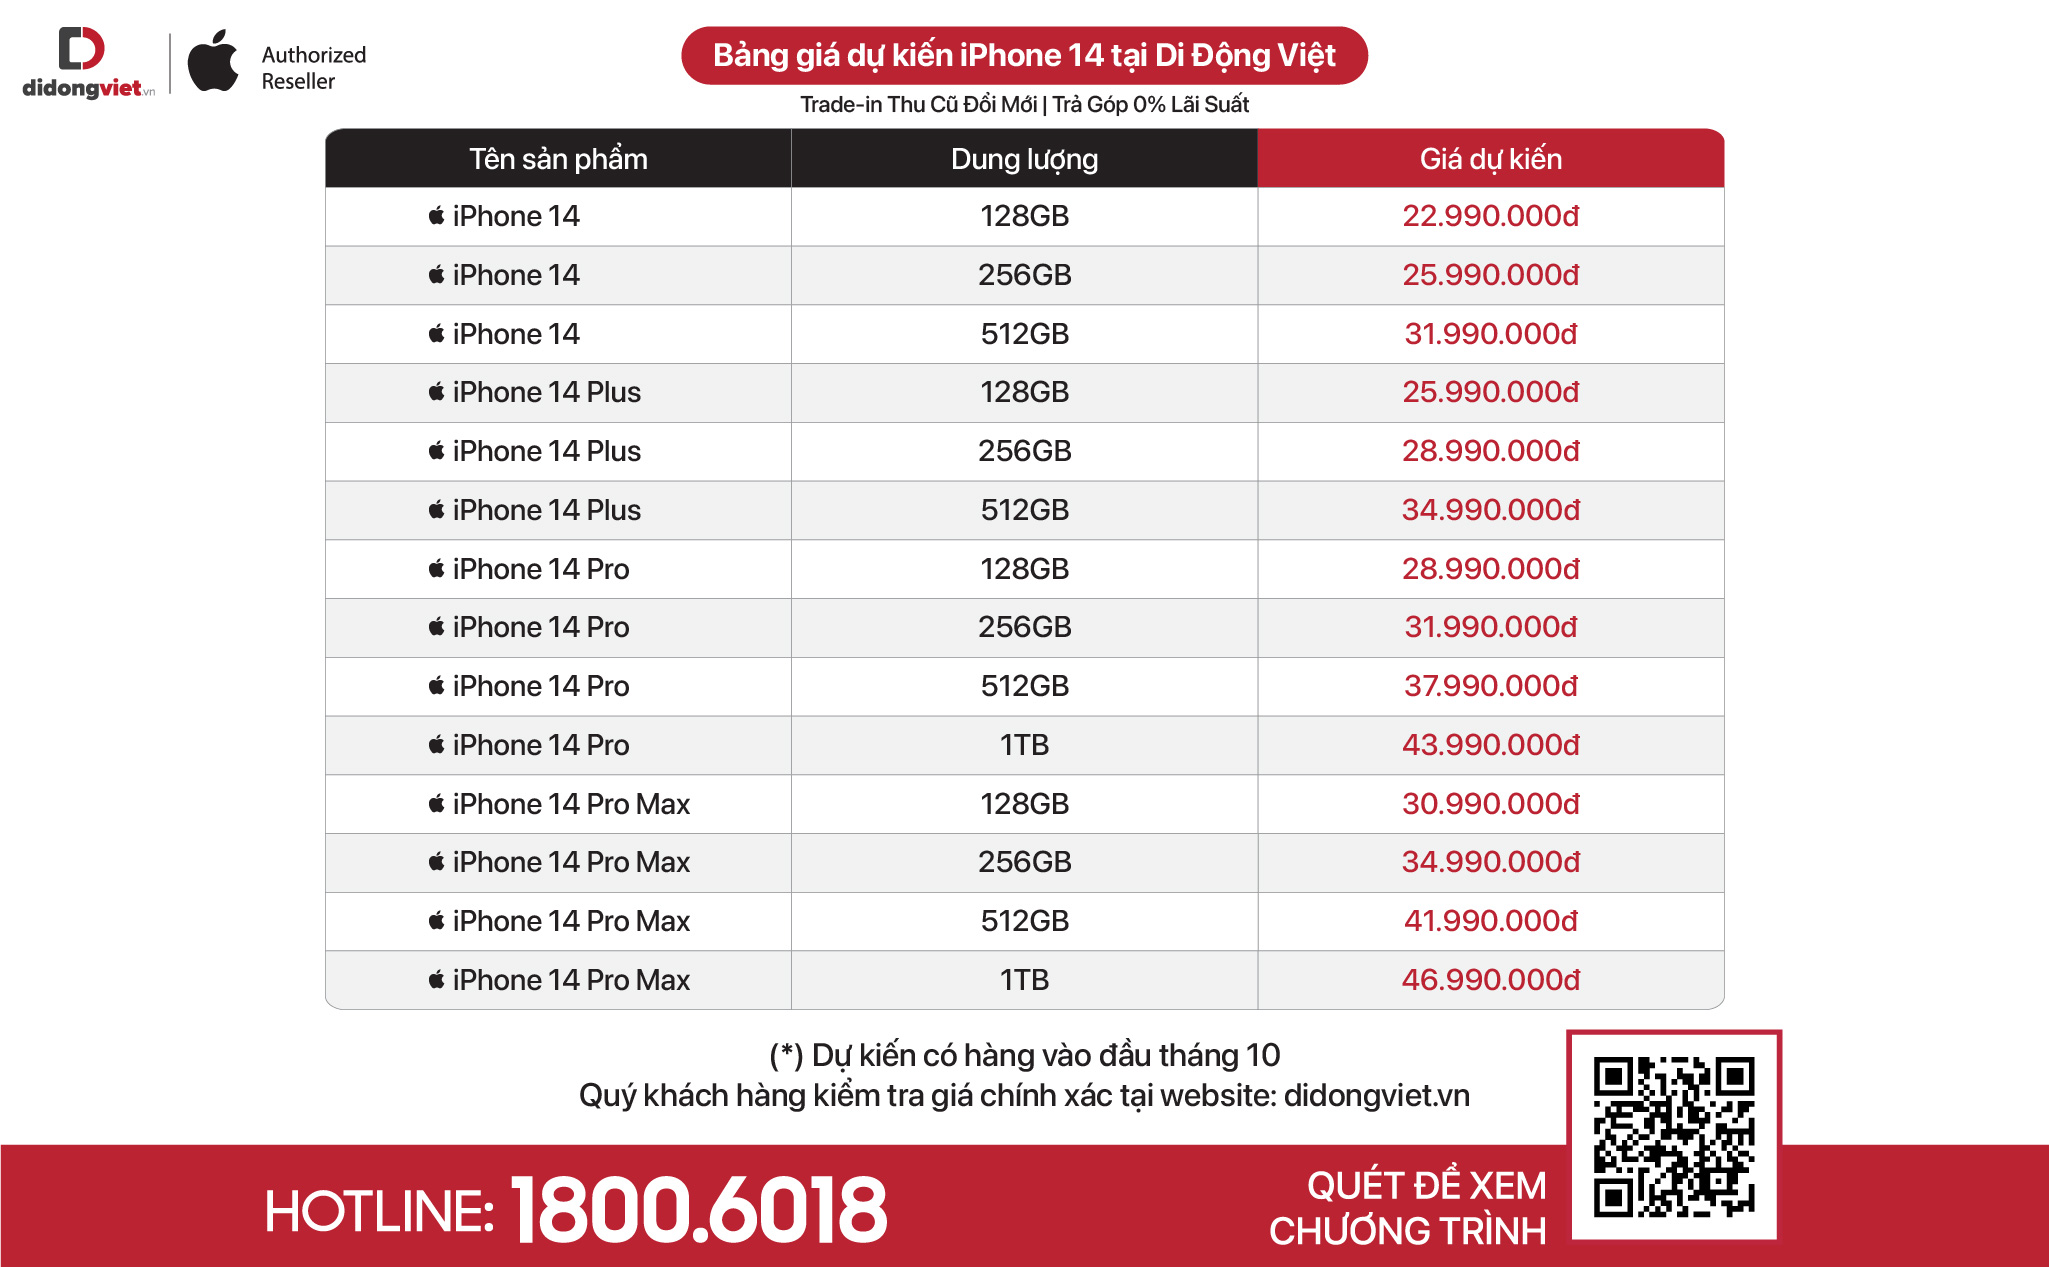 iPhone 14 chính hãng mở bán sớm từ ngày 14/10, giá dự kiến từ 22.99 triệu đồng